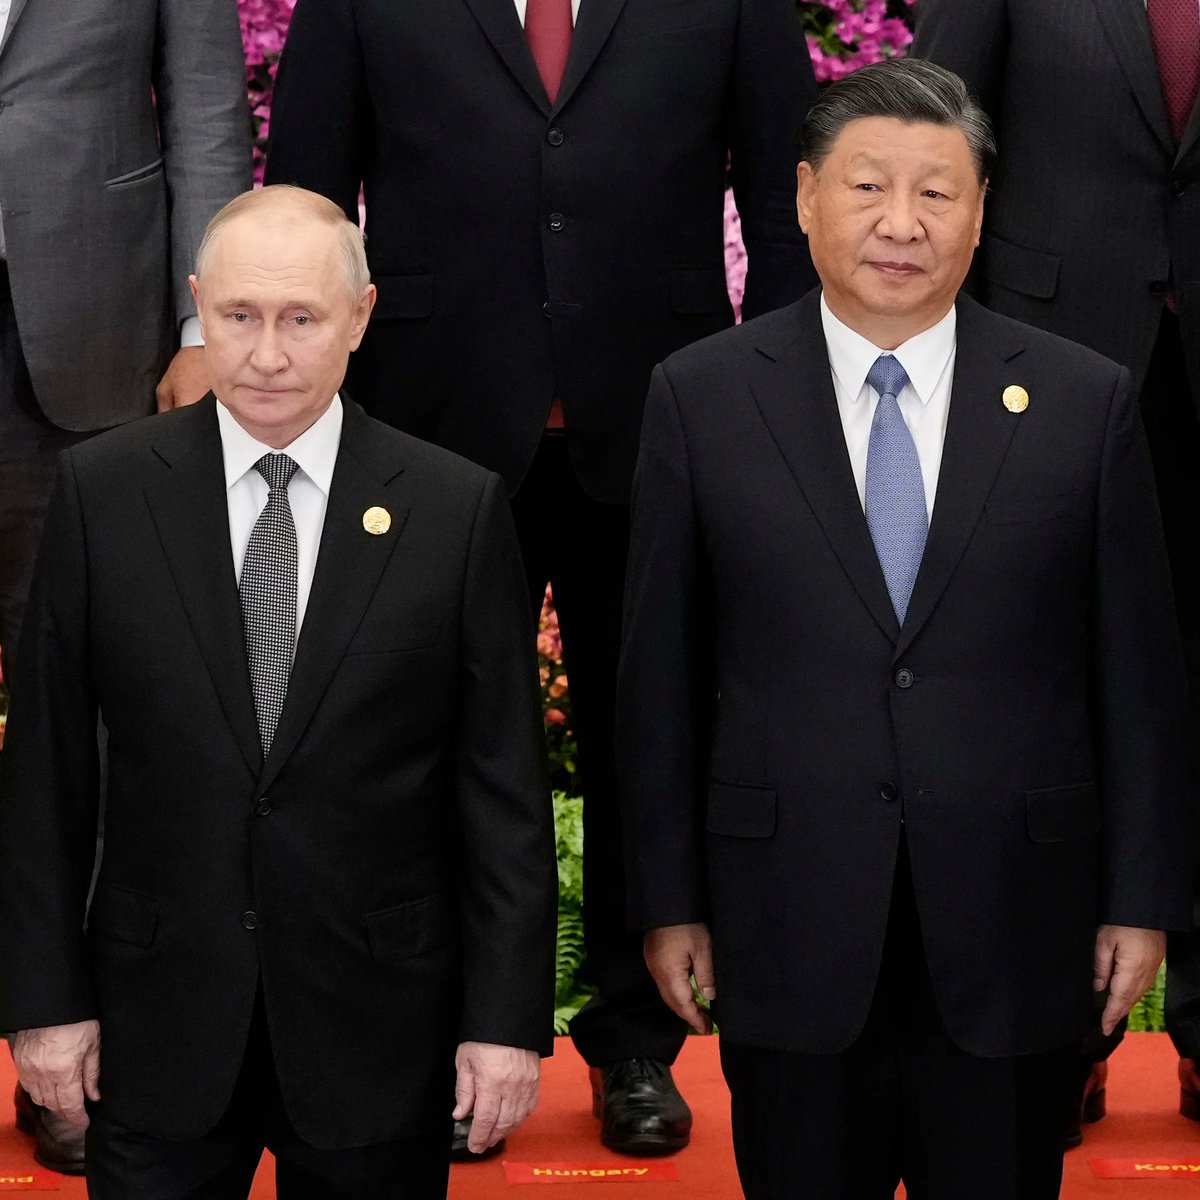 Cina si prepara ad ospitare Putin mentre i legami economici crescono sotto la pressione occidentale Pechino si aspetta di avere una 'lista della spesa' per Mosca nel contesto delle sanzioni ⬇️